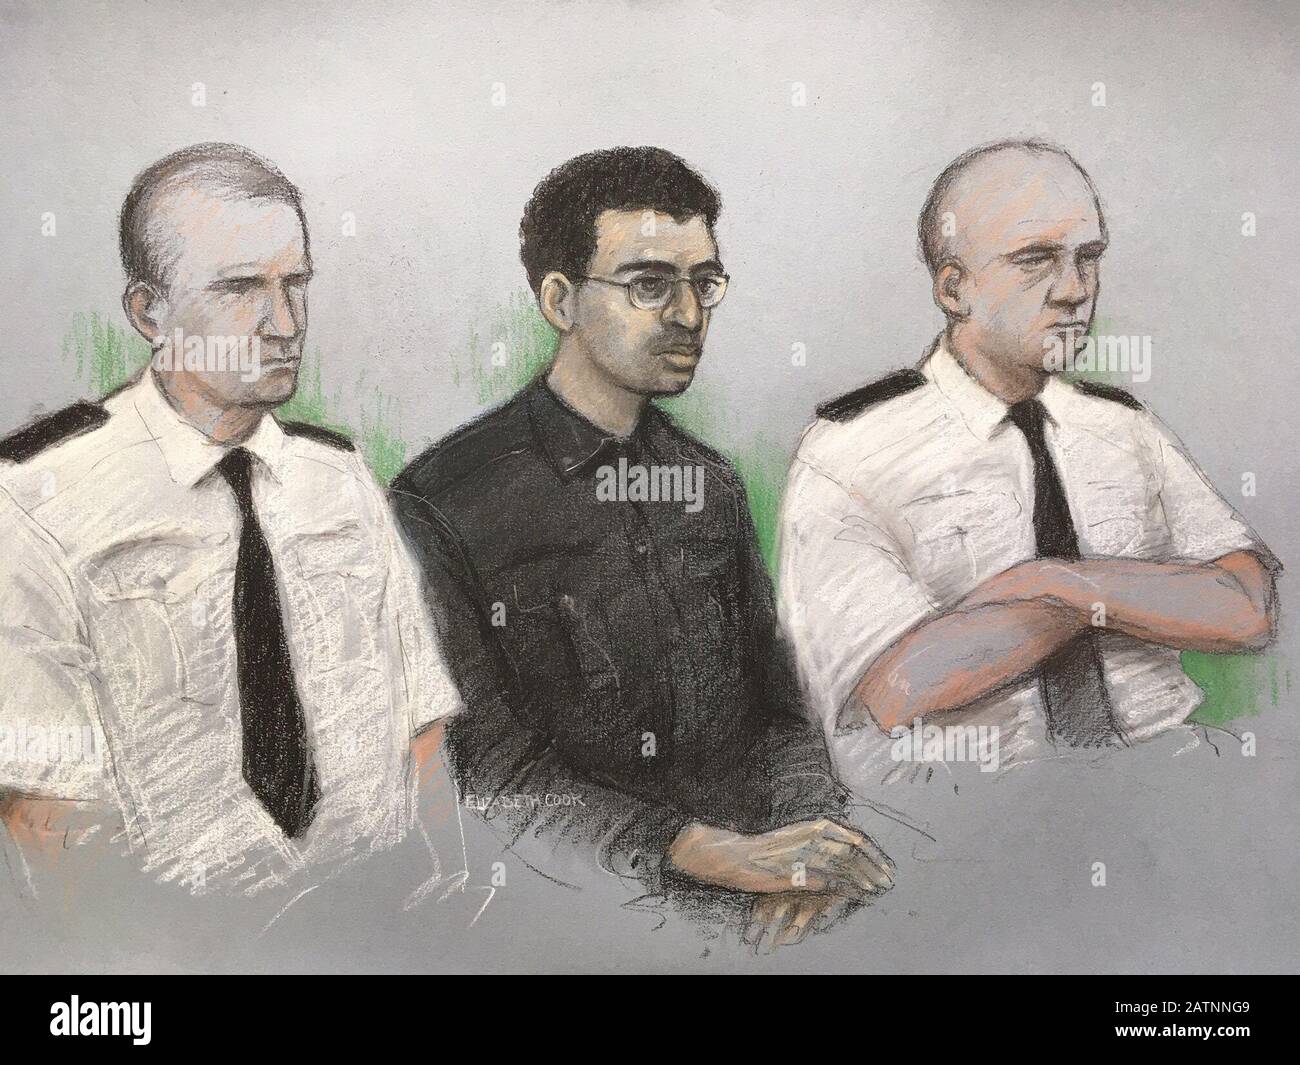 Disegno di artista di corte datato 27/01/20 da Elizabeth Cook di Hashem Abedi, fratello minore del bombardiere di Manchester Arena, nel molo presso l'Old Bailey di Londra accusato di omicidio di massa. Foto Stock